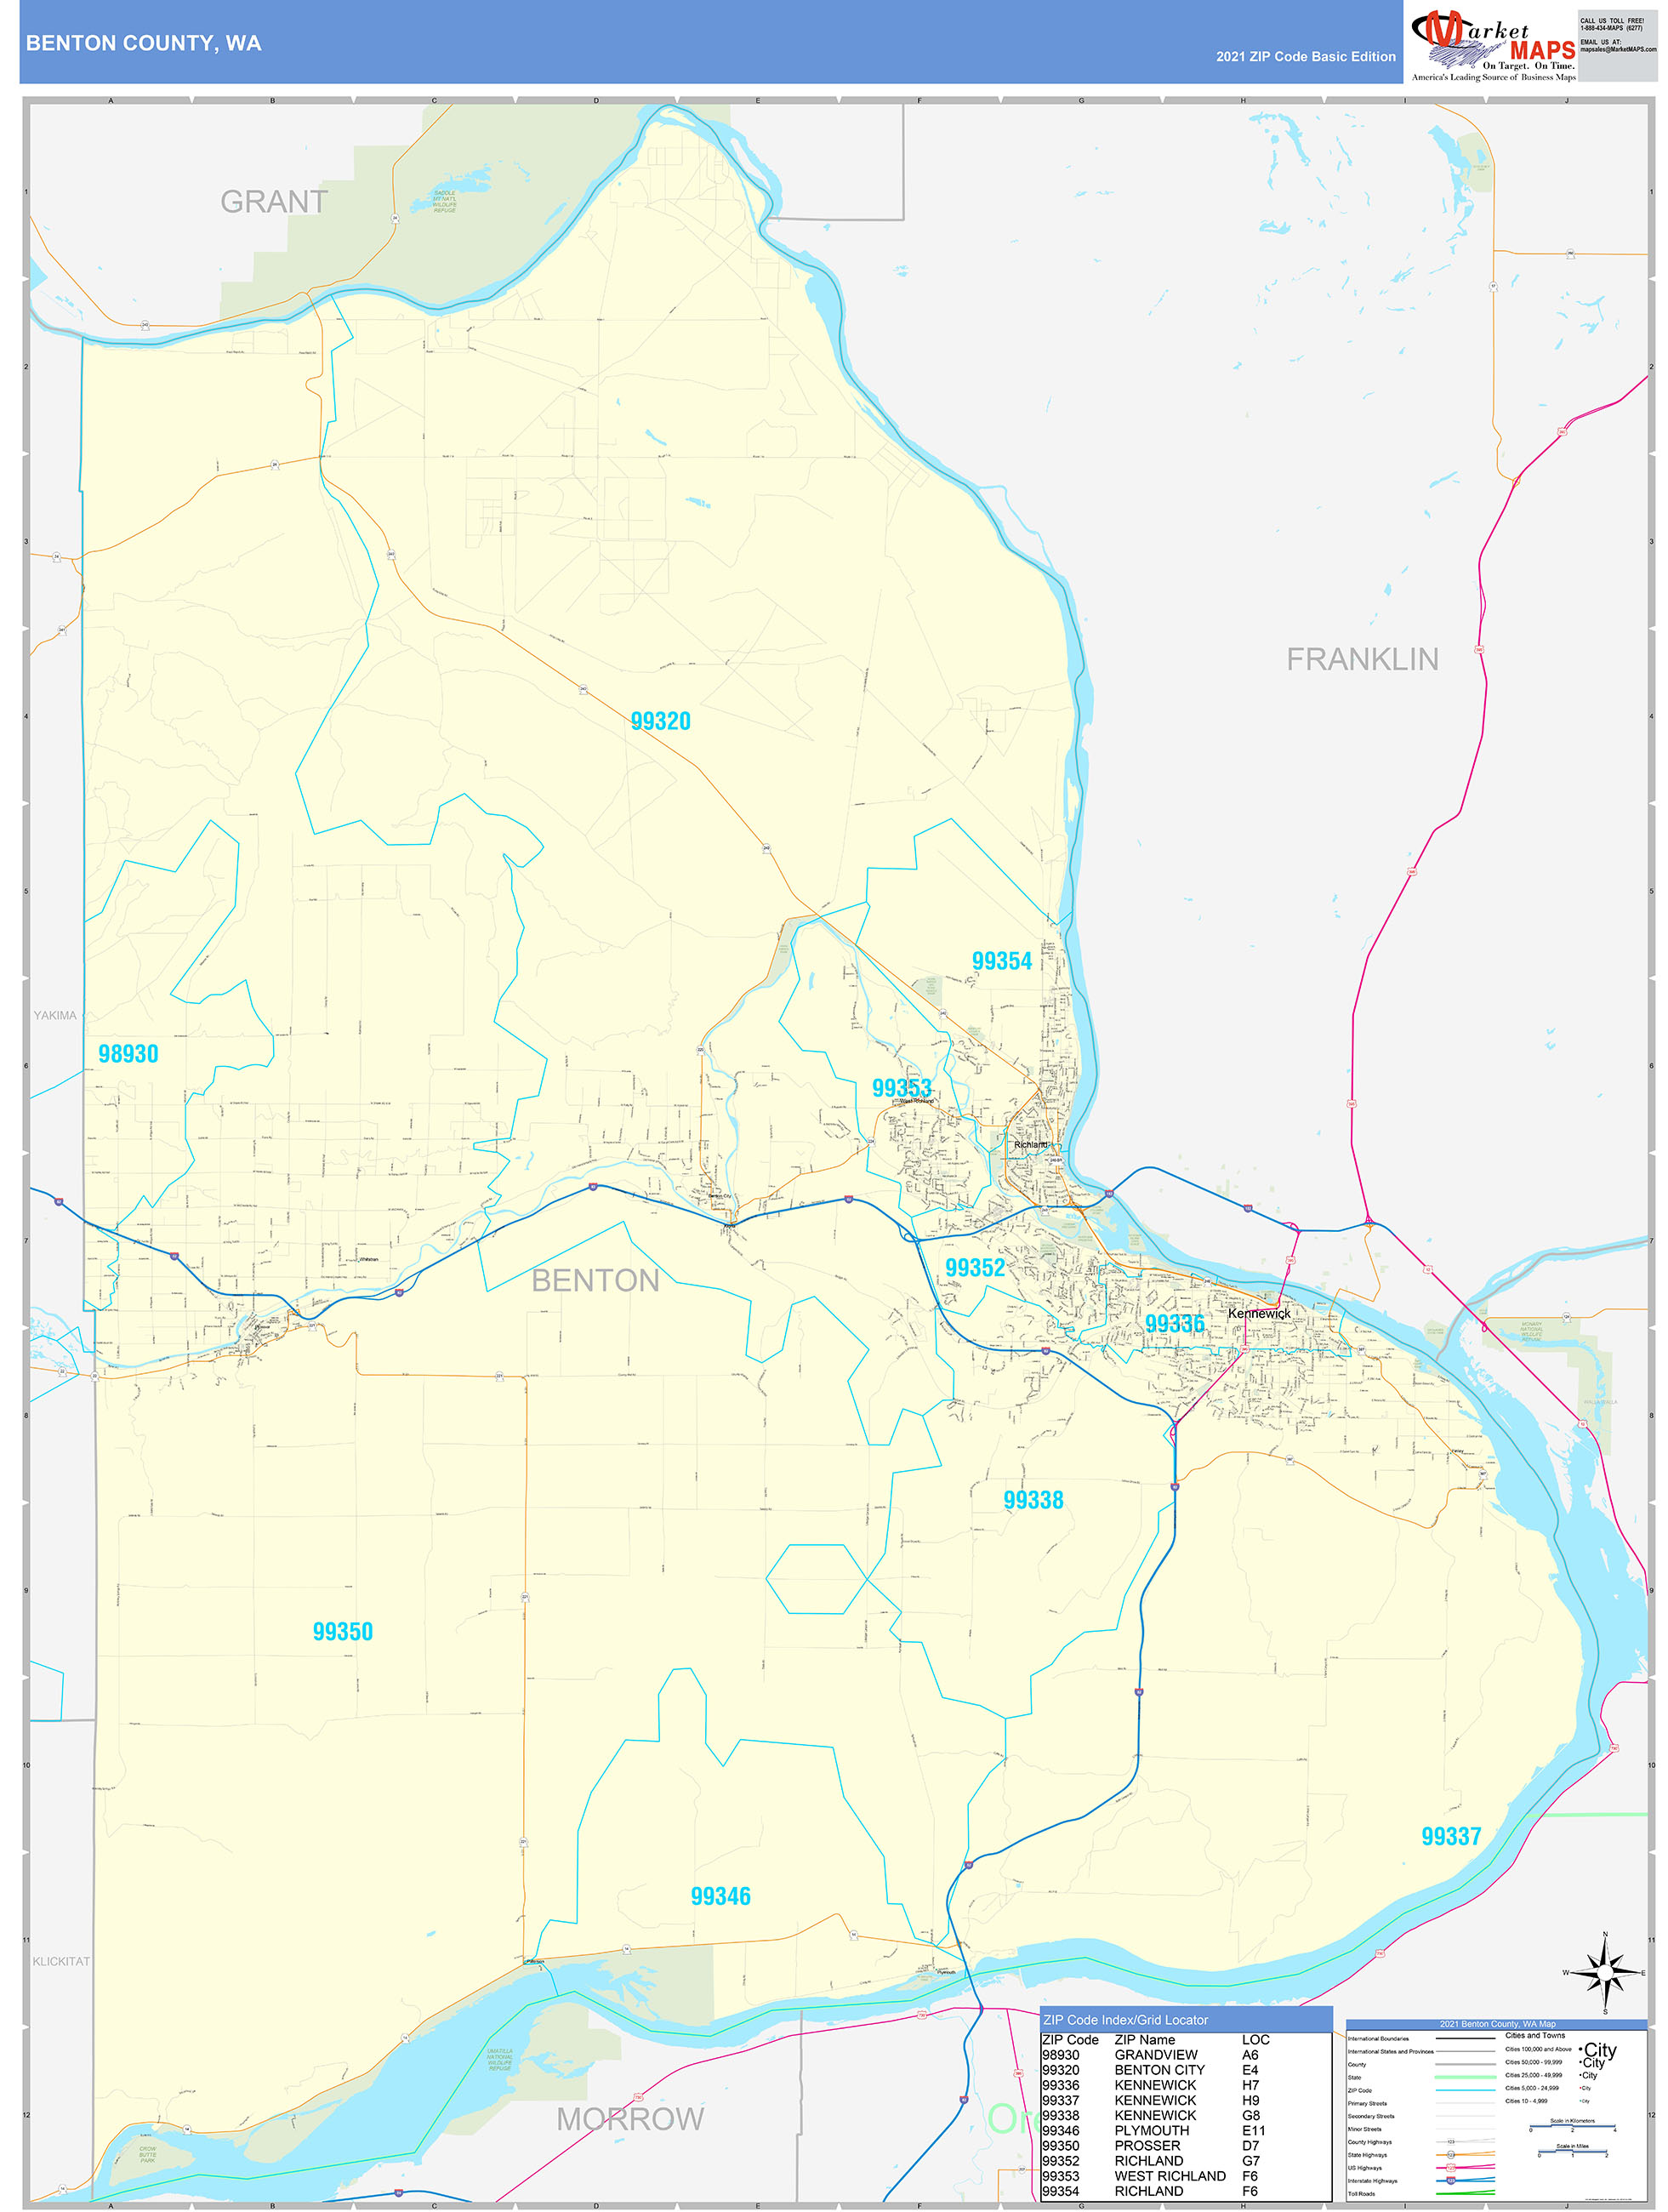 Benton County, WA Zip Code Wall Map Basic Style by MarketMAPS - MapSales